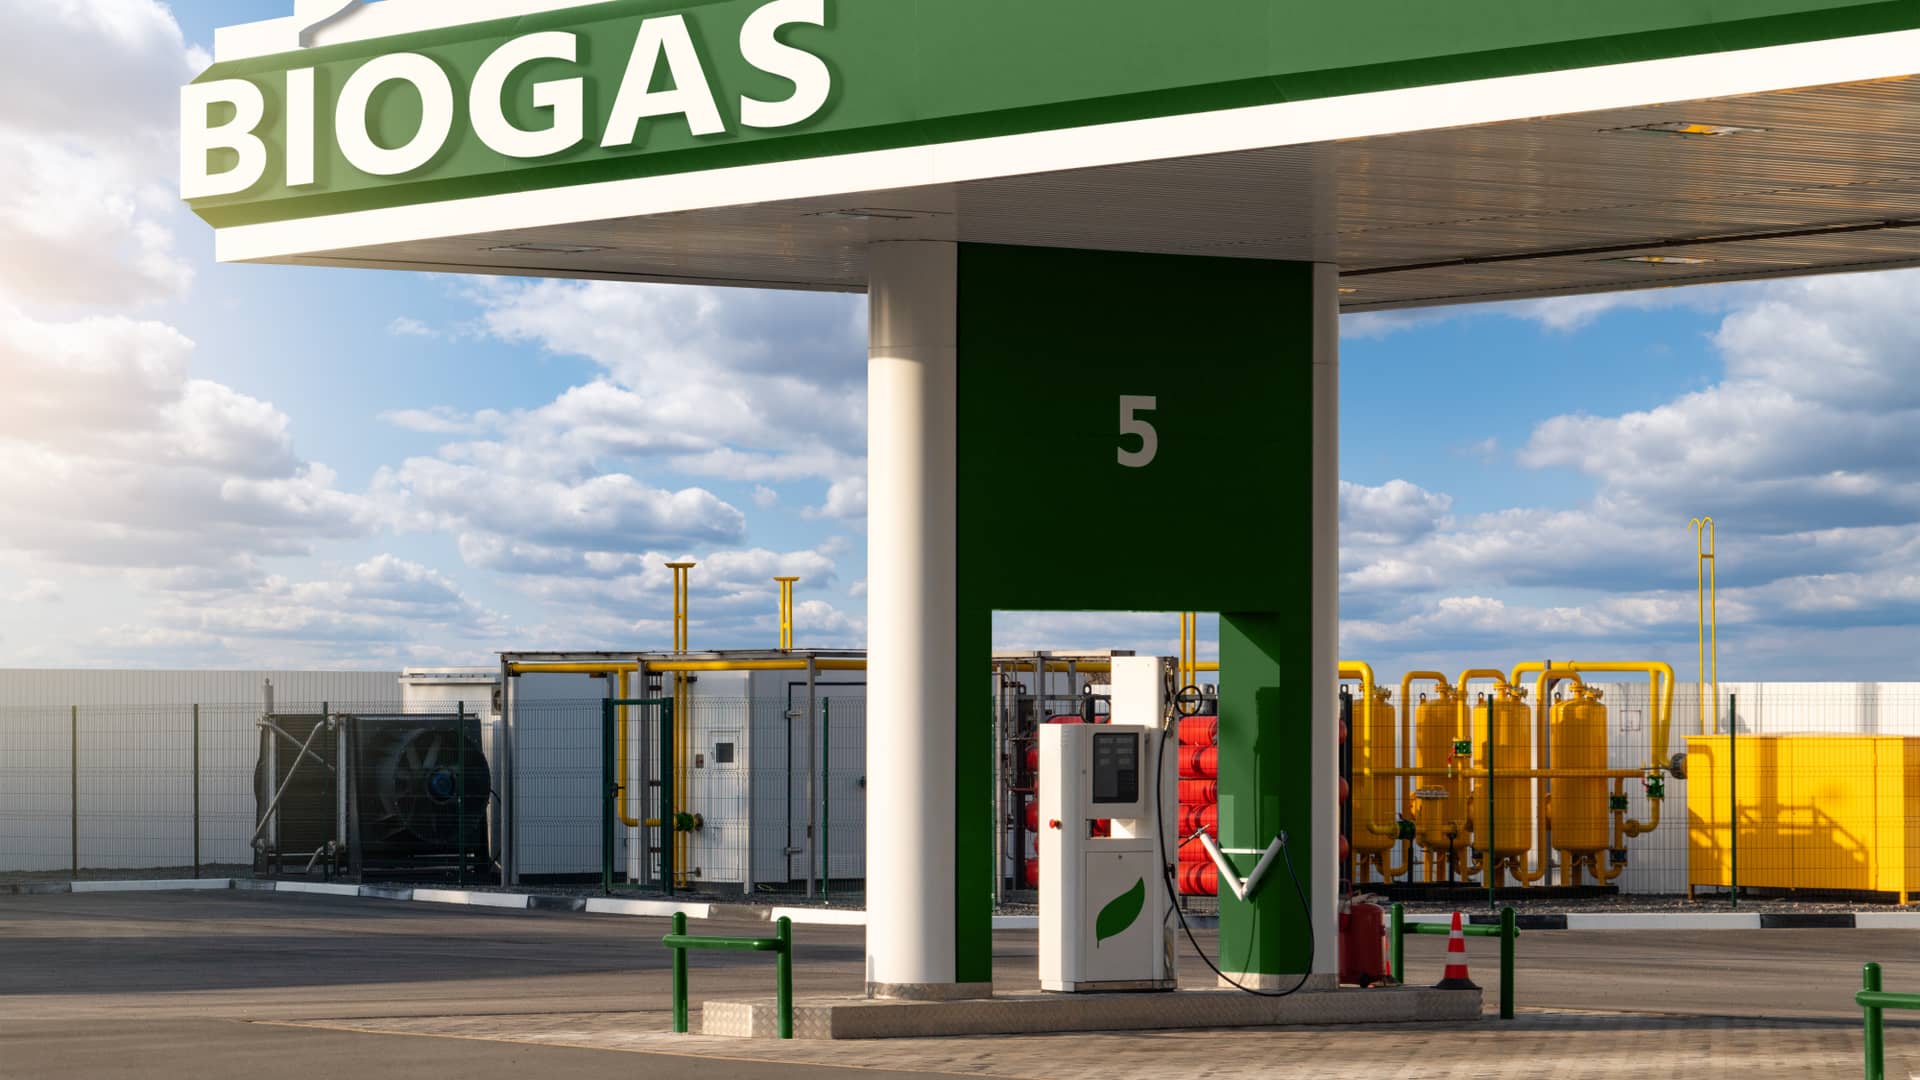 Render de idea para futura posible estación de biogás símboliza el precio y costes de esta energía